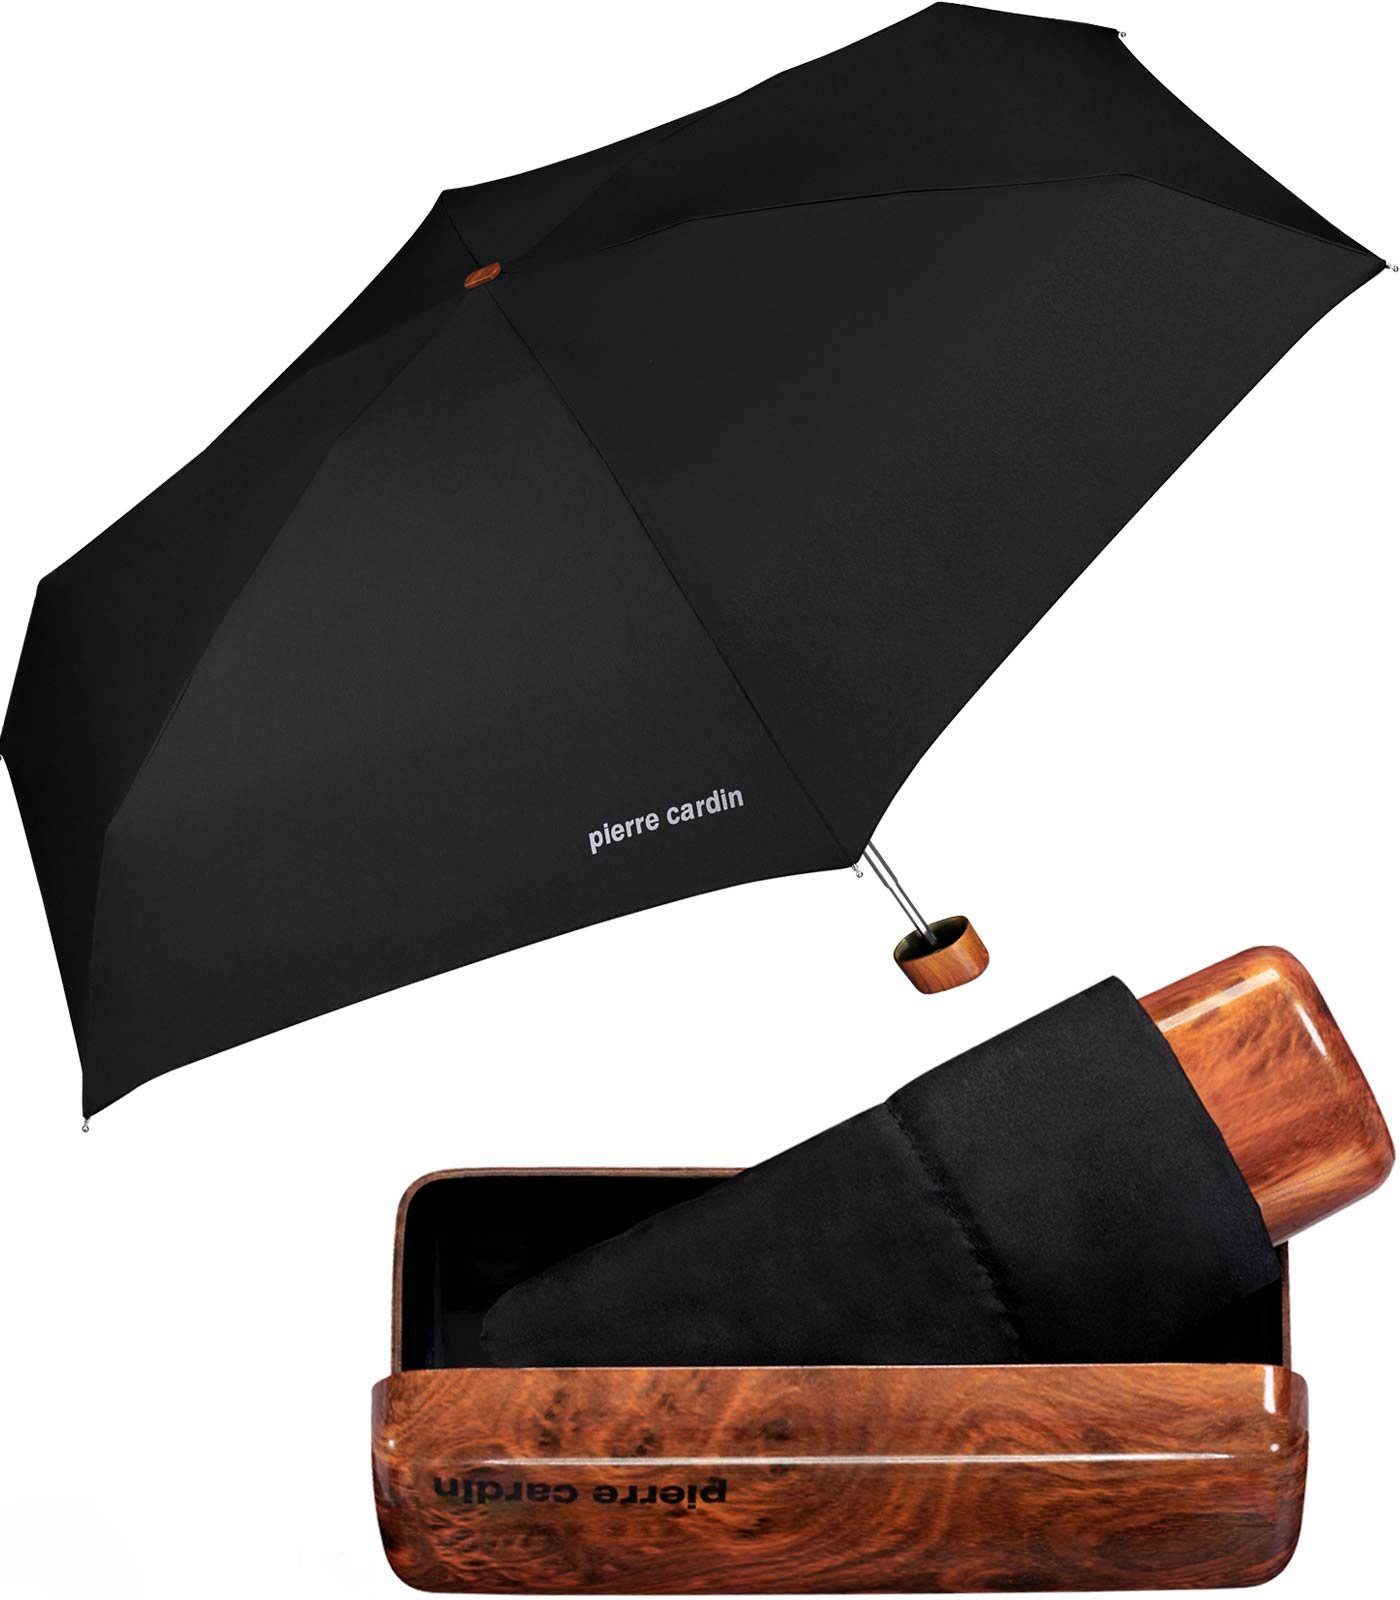 Pierre Cardin Taschenregenschirm leichter Minischirm mit Etui mybrella  Noire, mit dem Hard-Case Etui in Holzoptik besonders edel